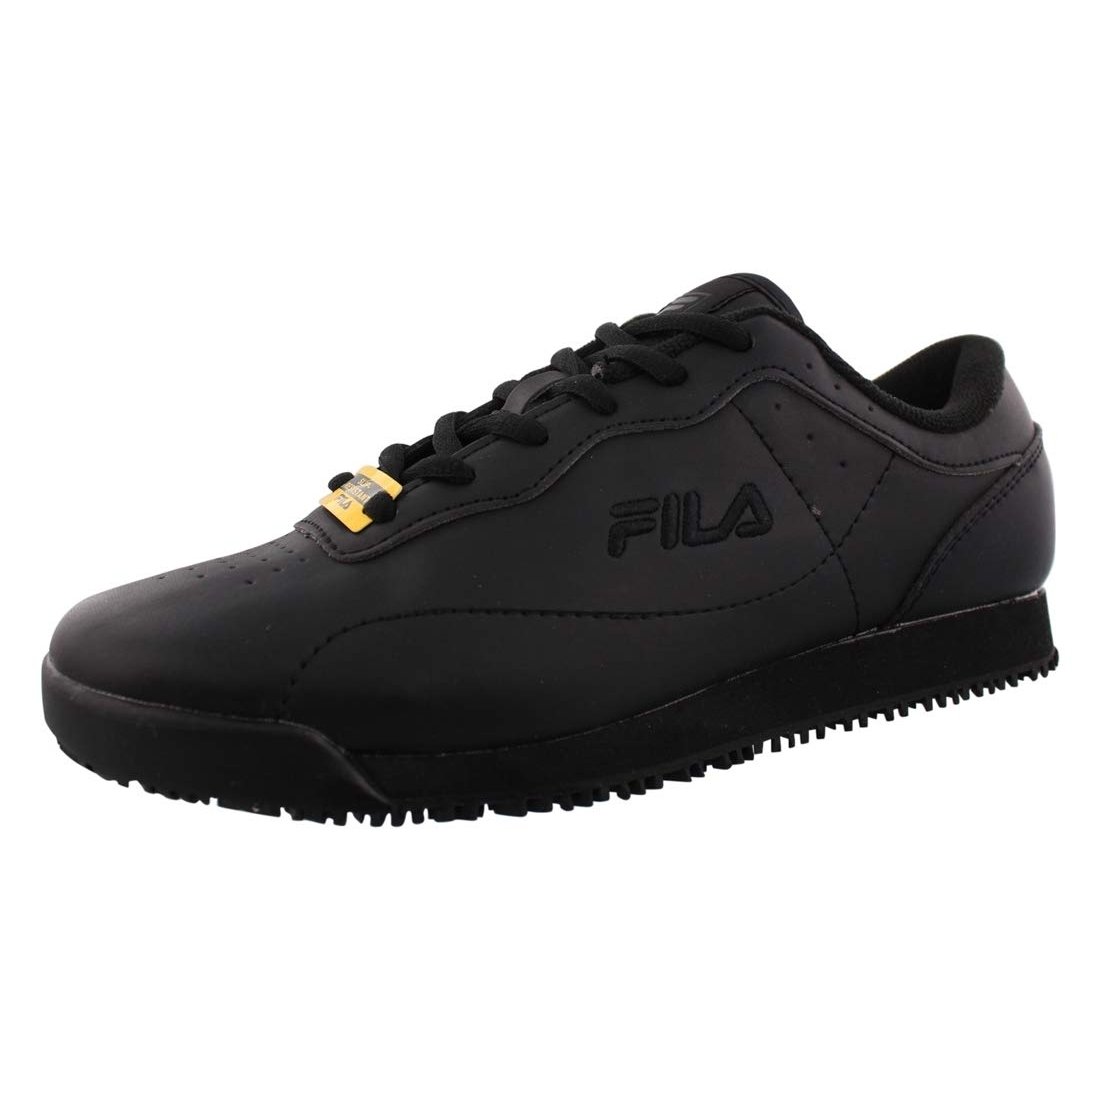 Fila Memory Viable Sr Wide Womens Shoes Size 10, Color: Black 0 BLK/BLK/BLK - Black, 14.0